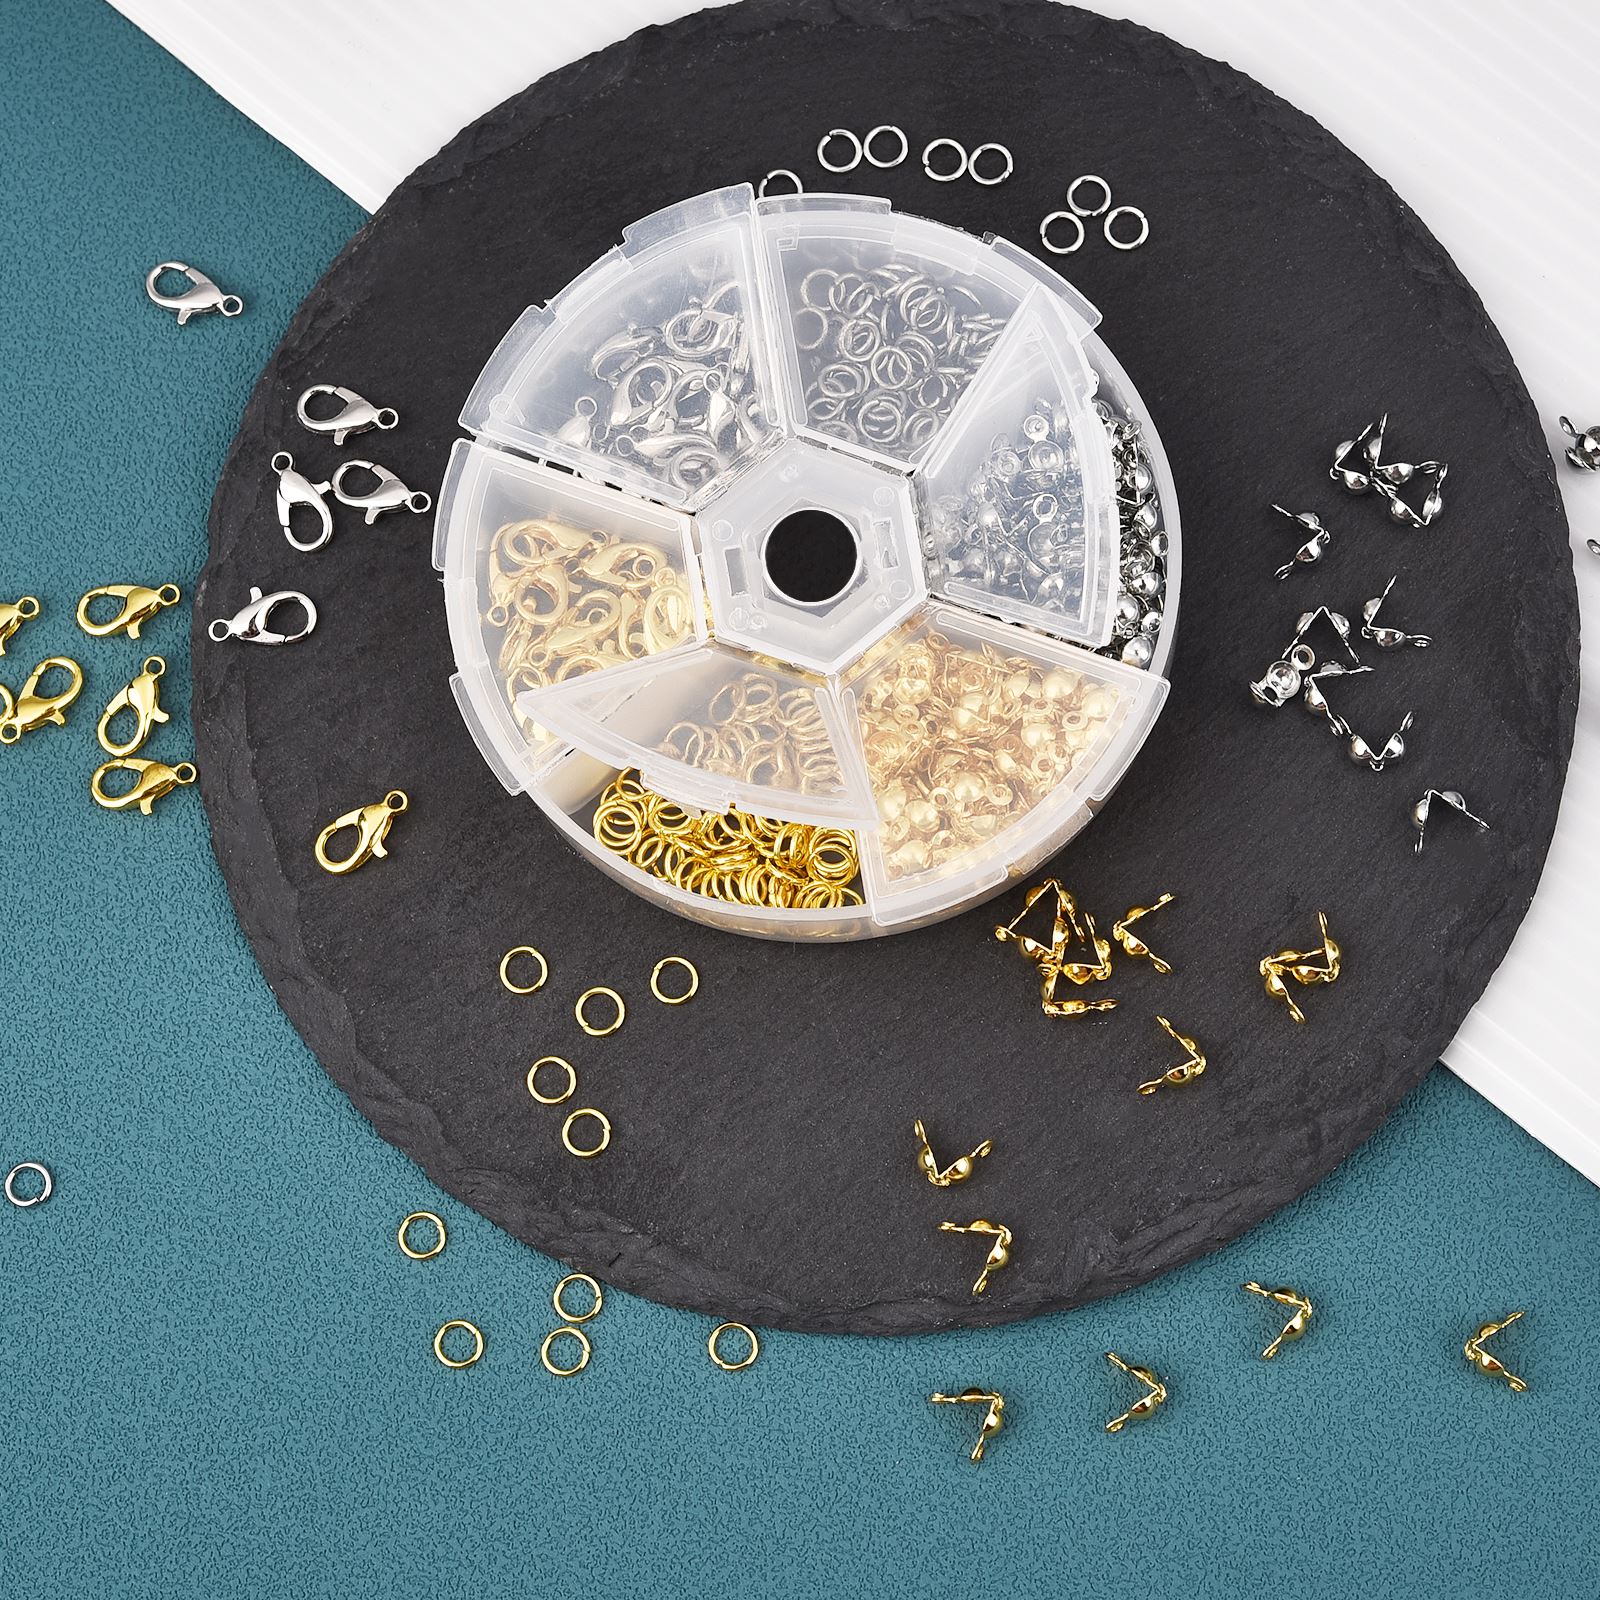 Kit-de-fabrication-de-bijoux-450-860-pi-ces-bo-te-fermoirs-homard-anneaux-de-saut